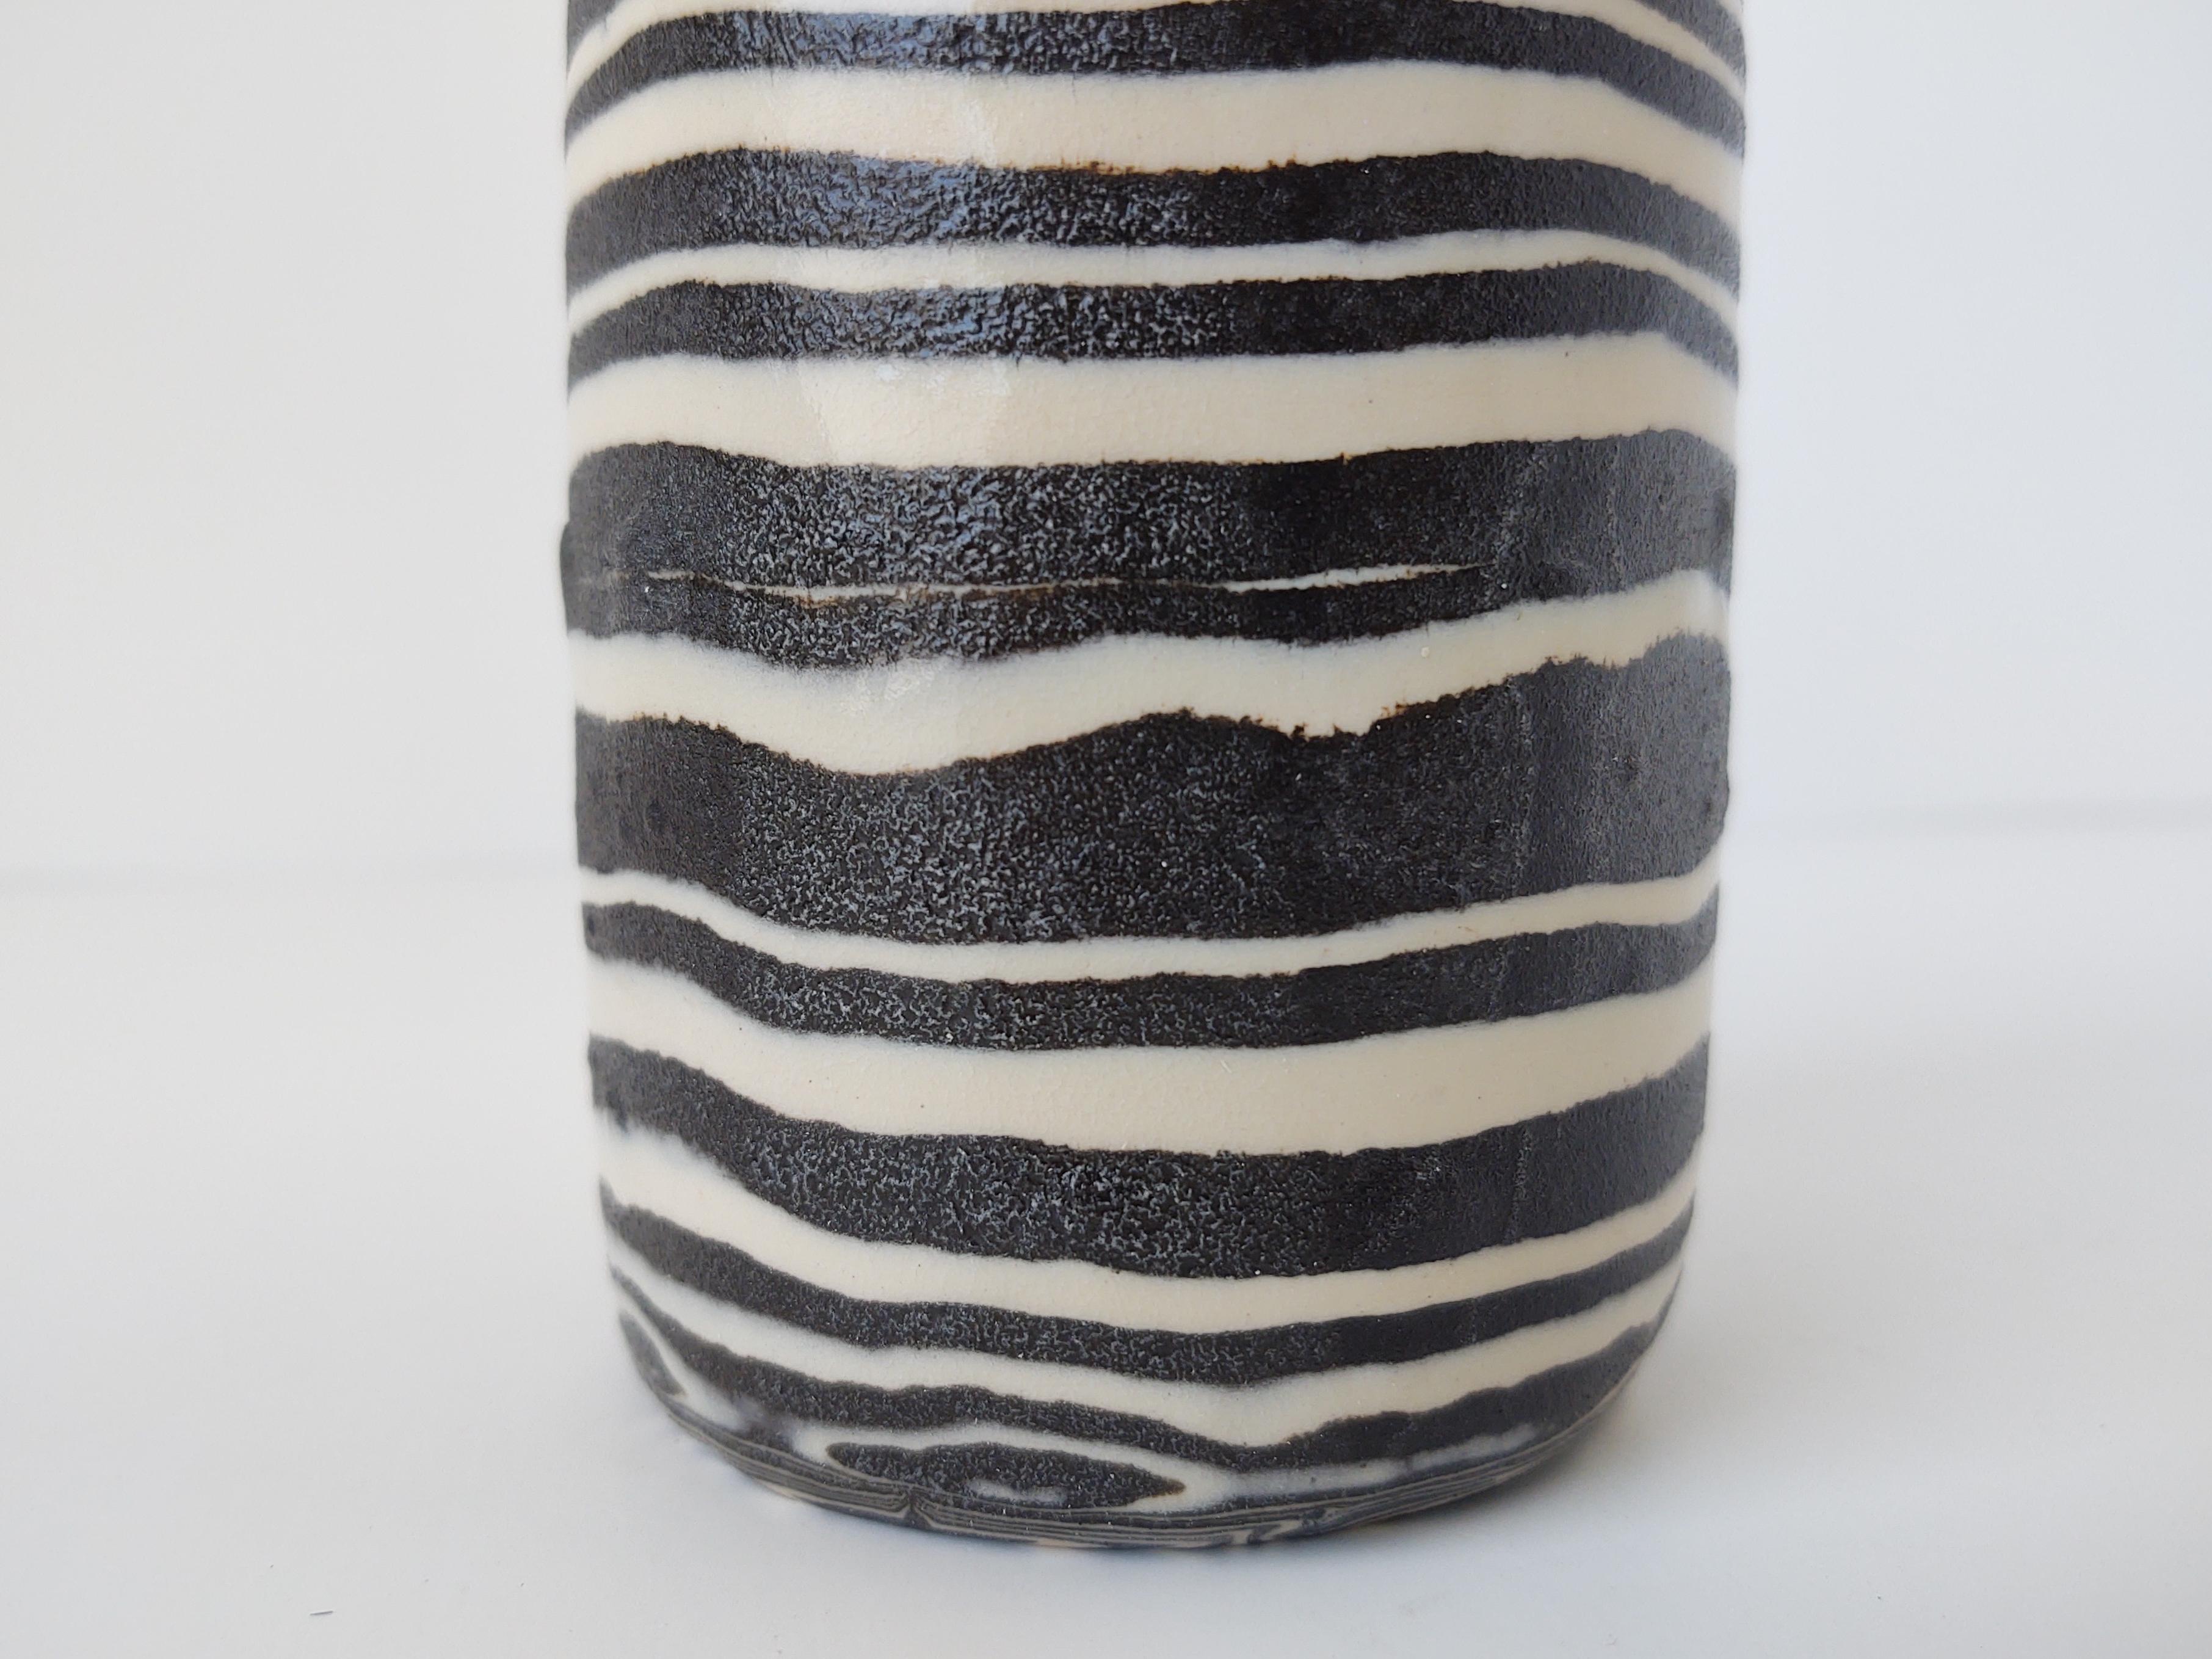 American Handmade Ceramic Nerikomi 'Zebra' Striped Black and White Vase by Fizzy Ceramics For Sale